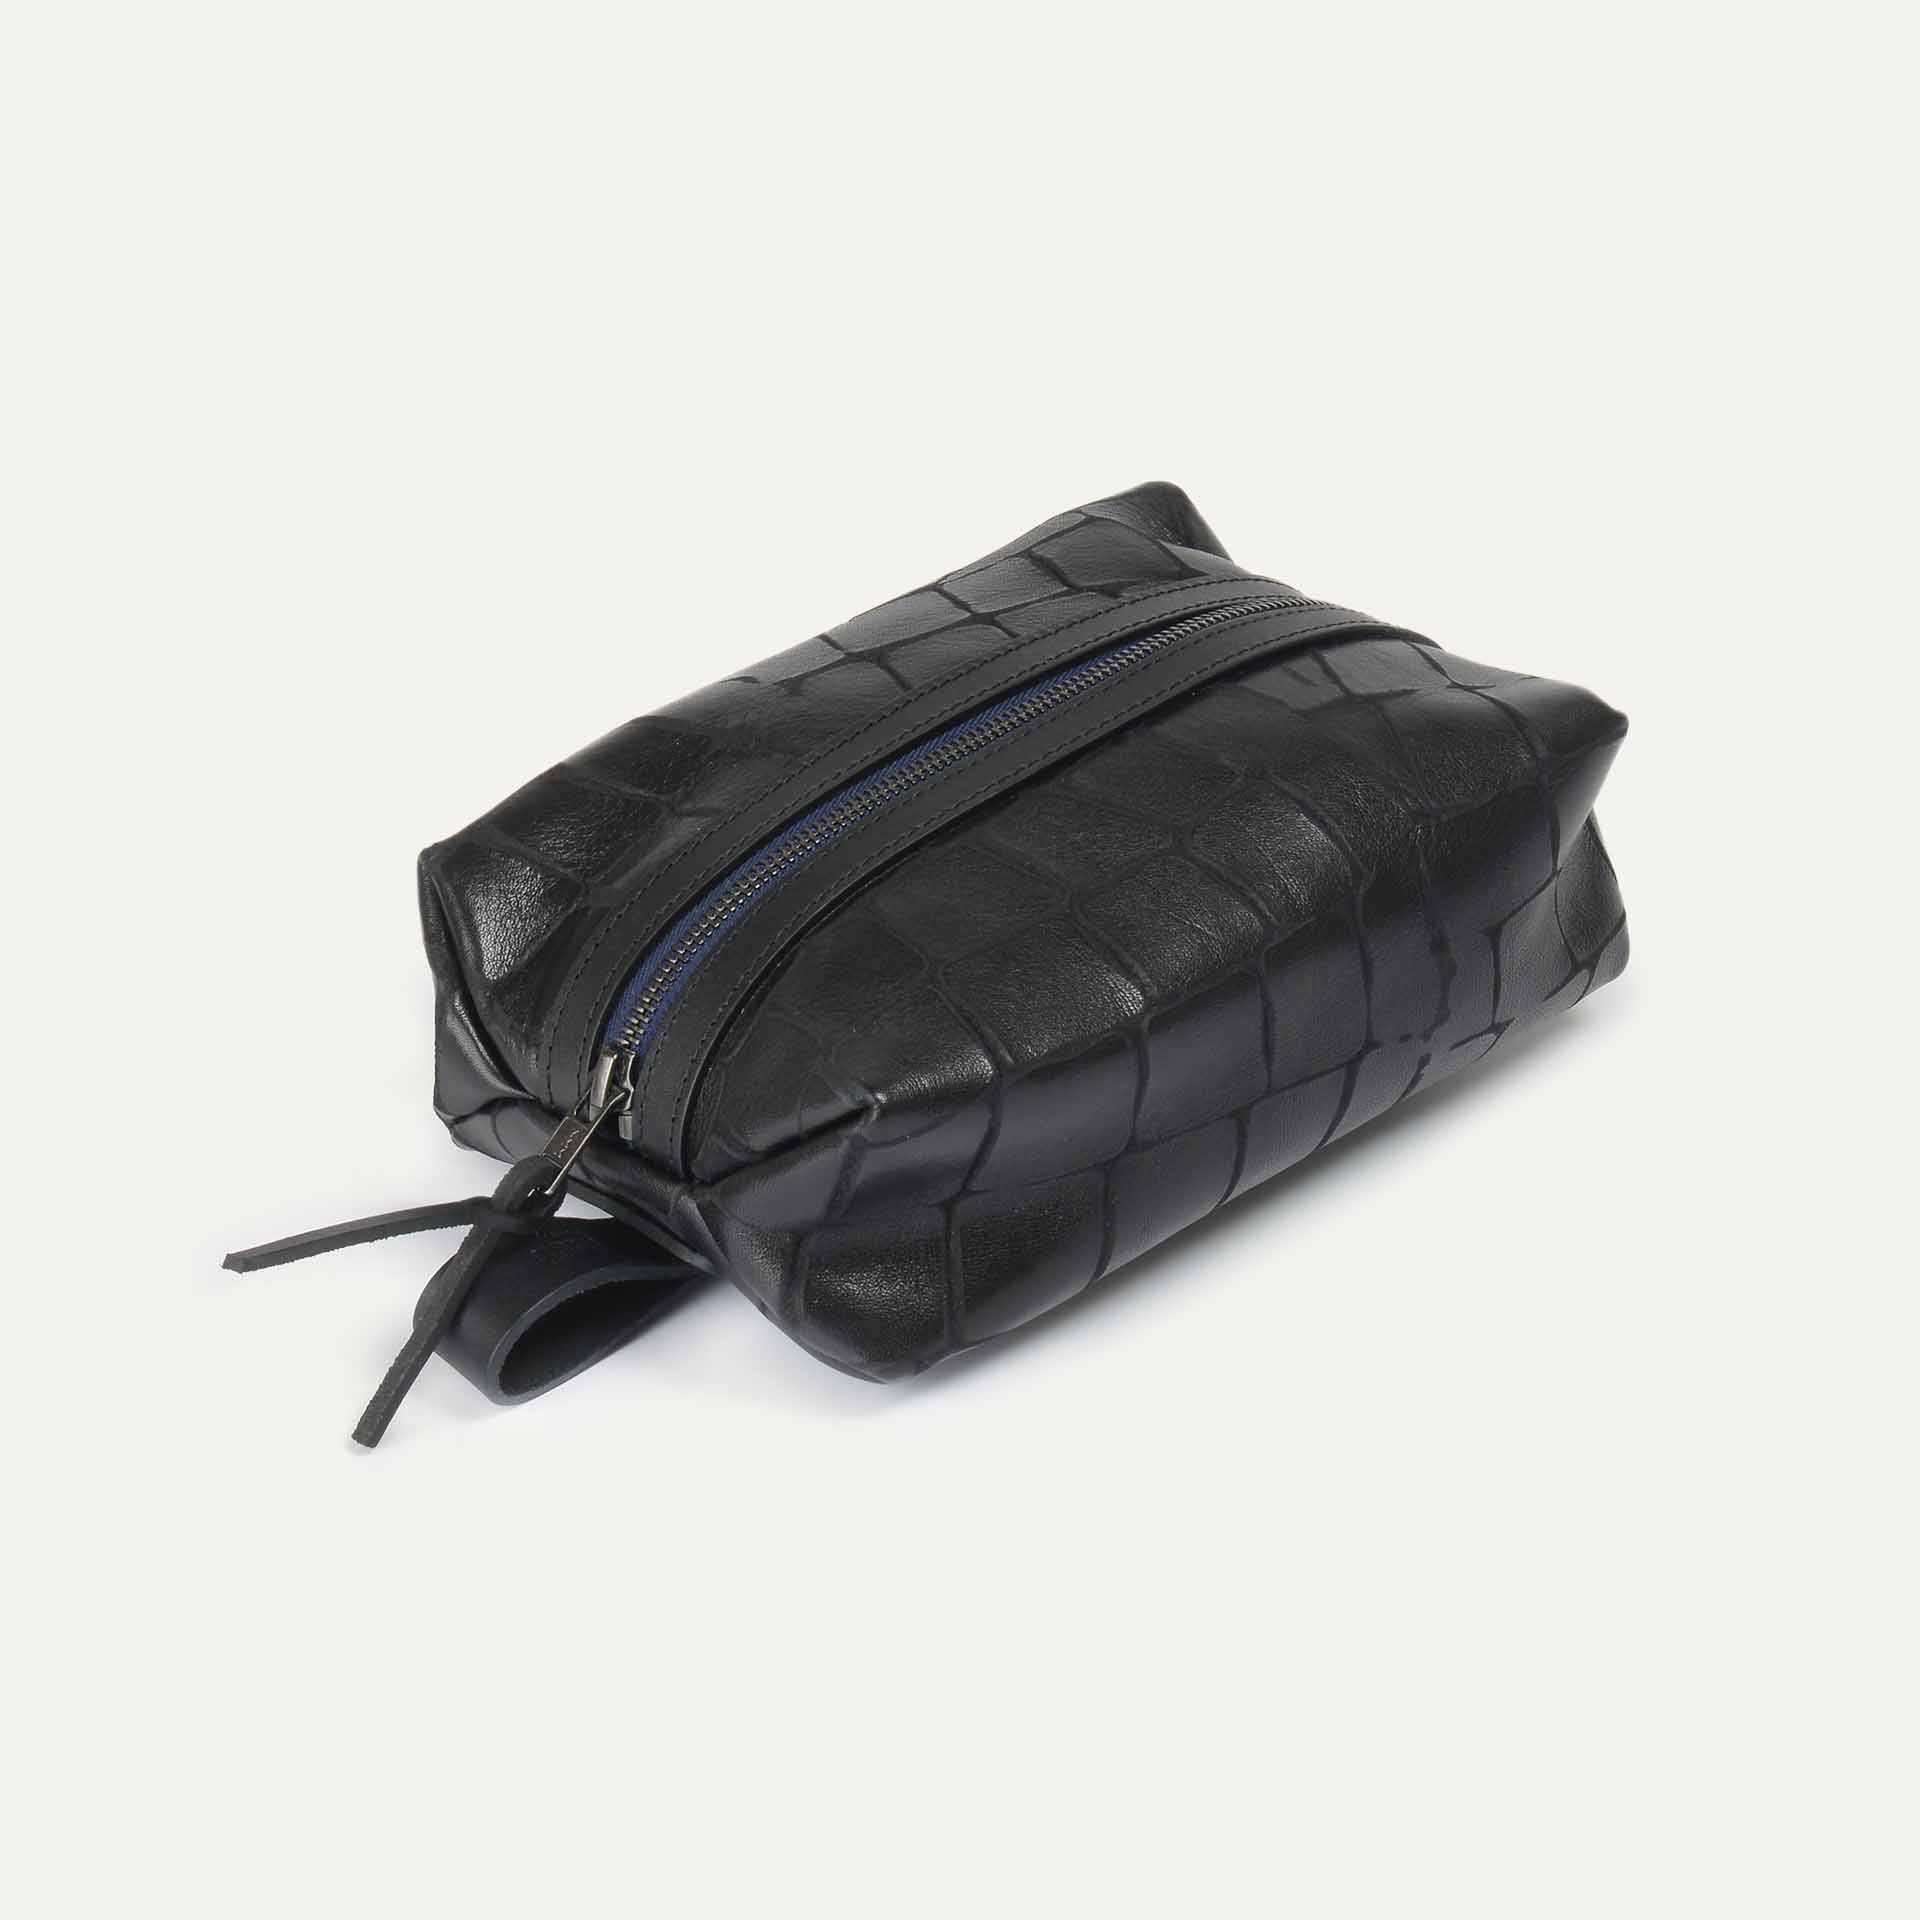 Zazou black leather toiletry bag